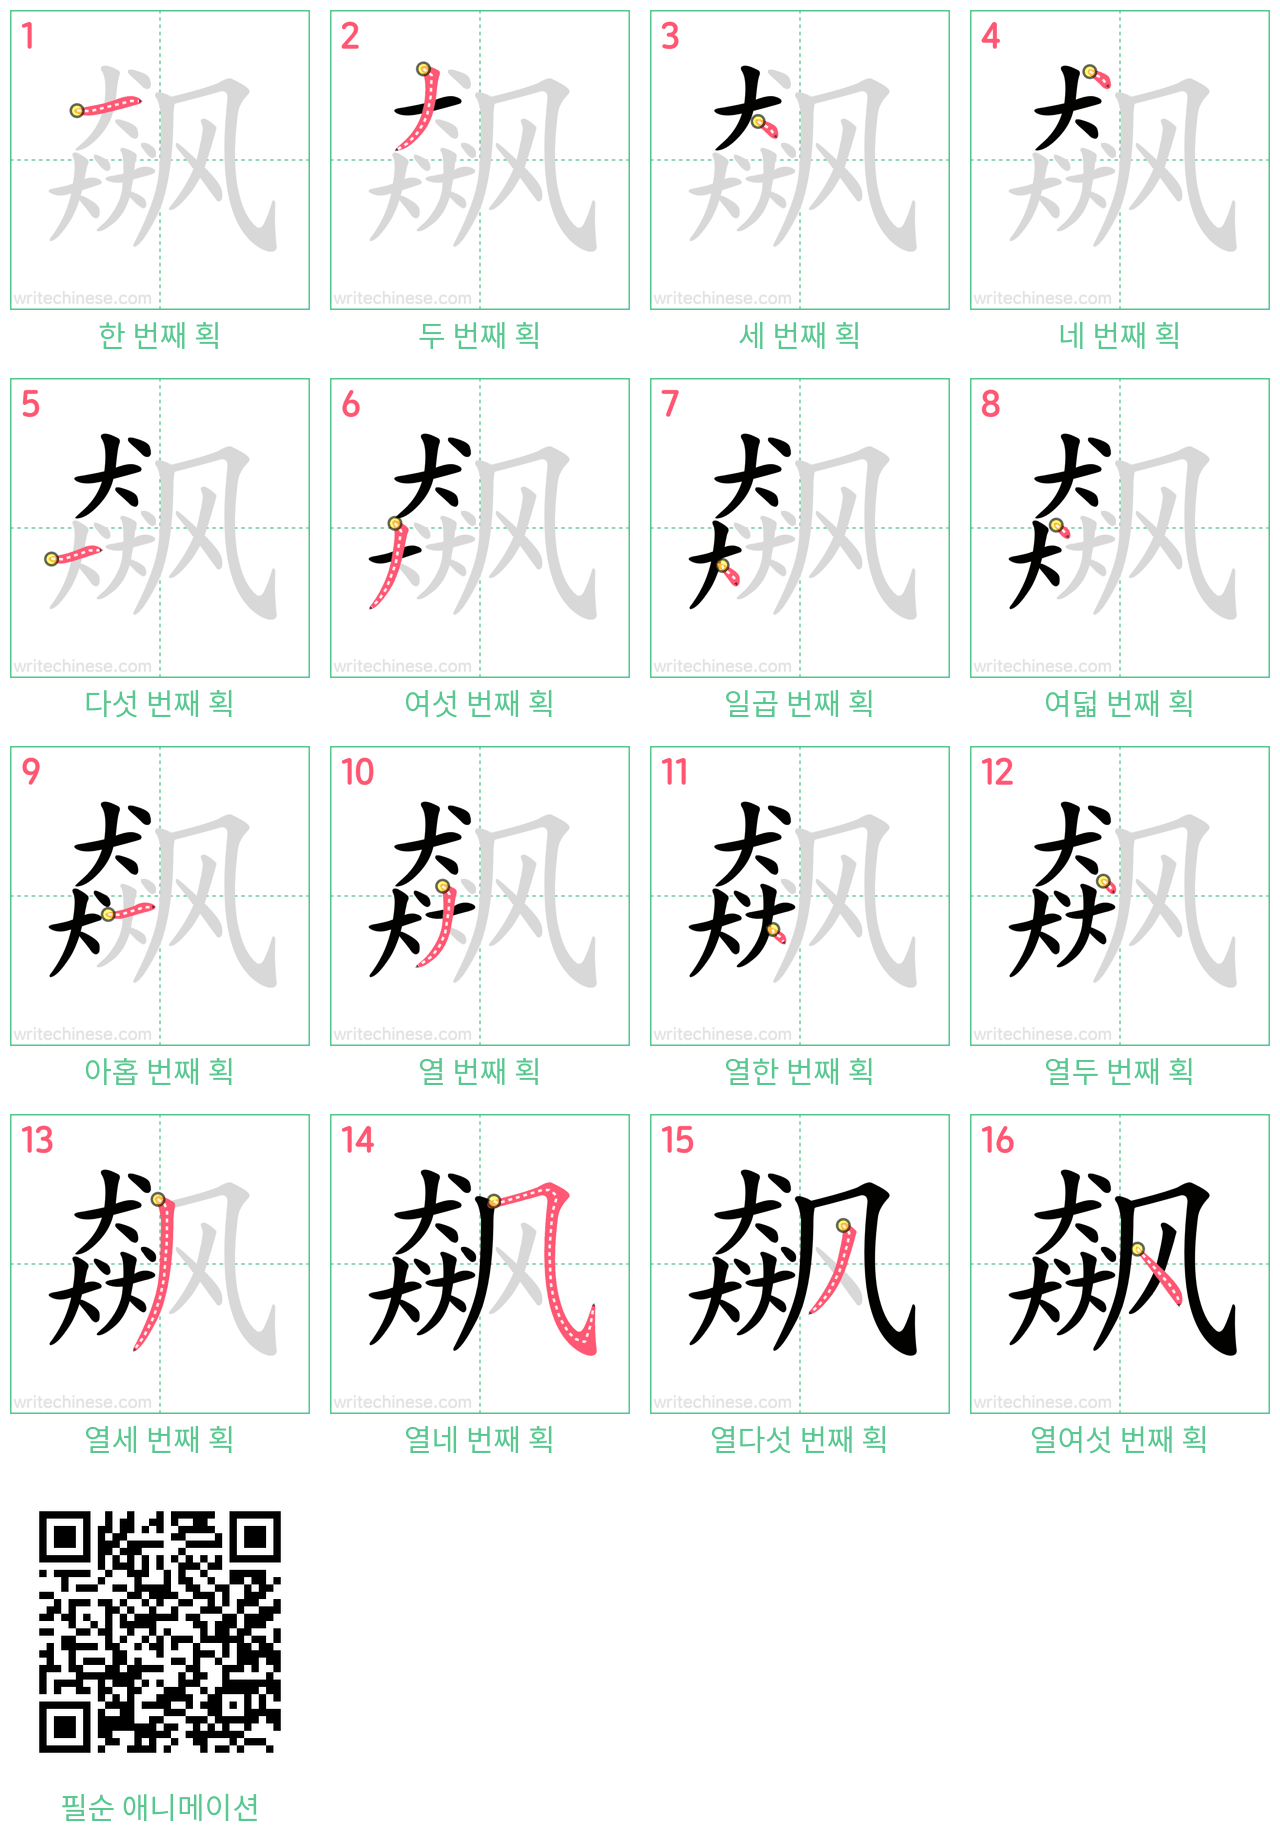 飙 step-by-step stroke order diagrams